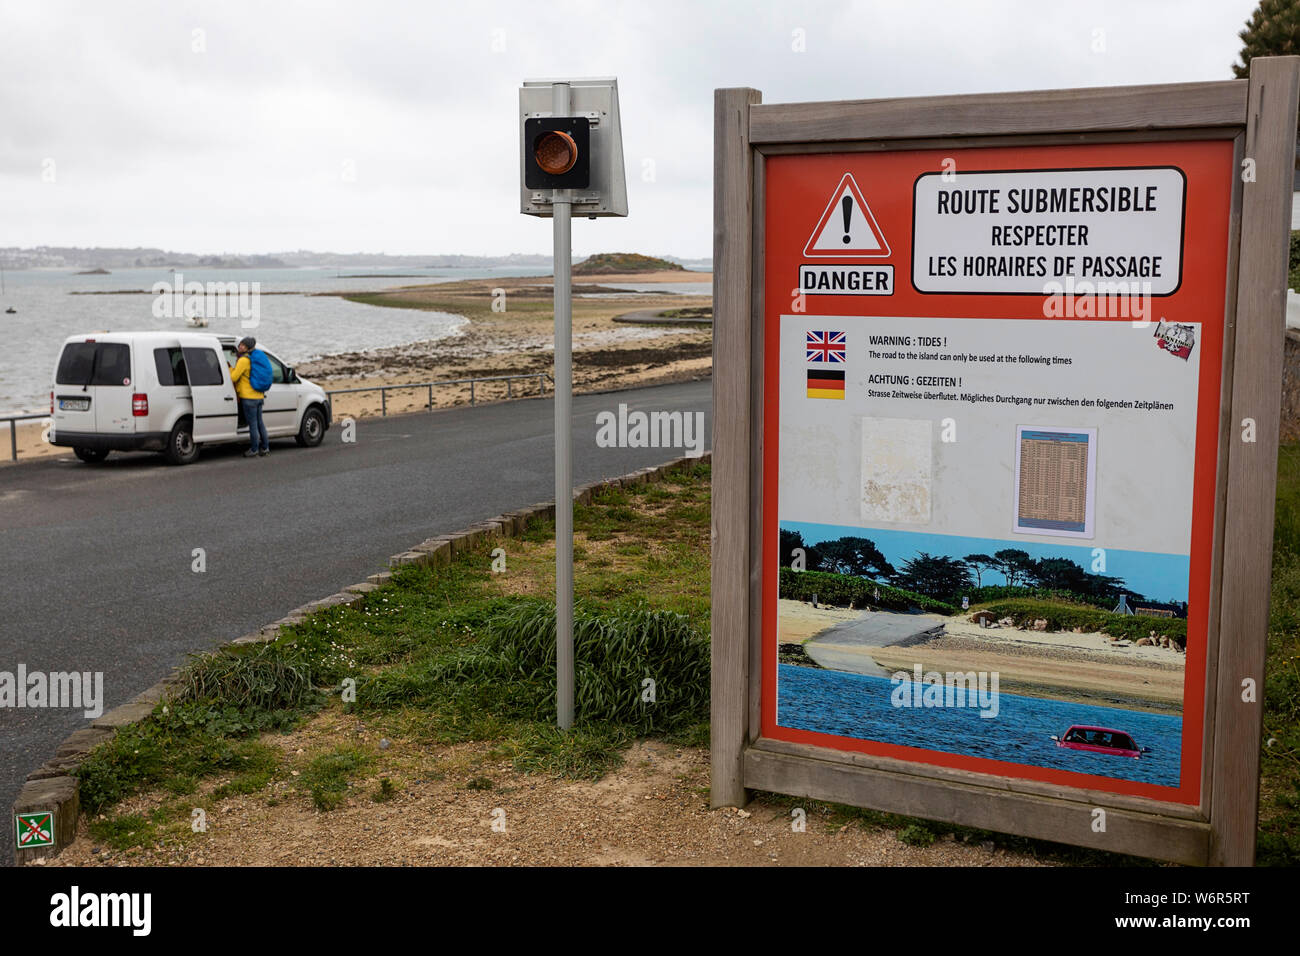 Una vettura parcheggiata nel percorso sommersi in segno di avvertimento che indica che la strada è passibile di fllooding ad alta marea, Bretagna Francia Foto Stock